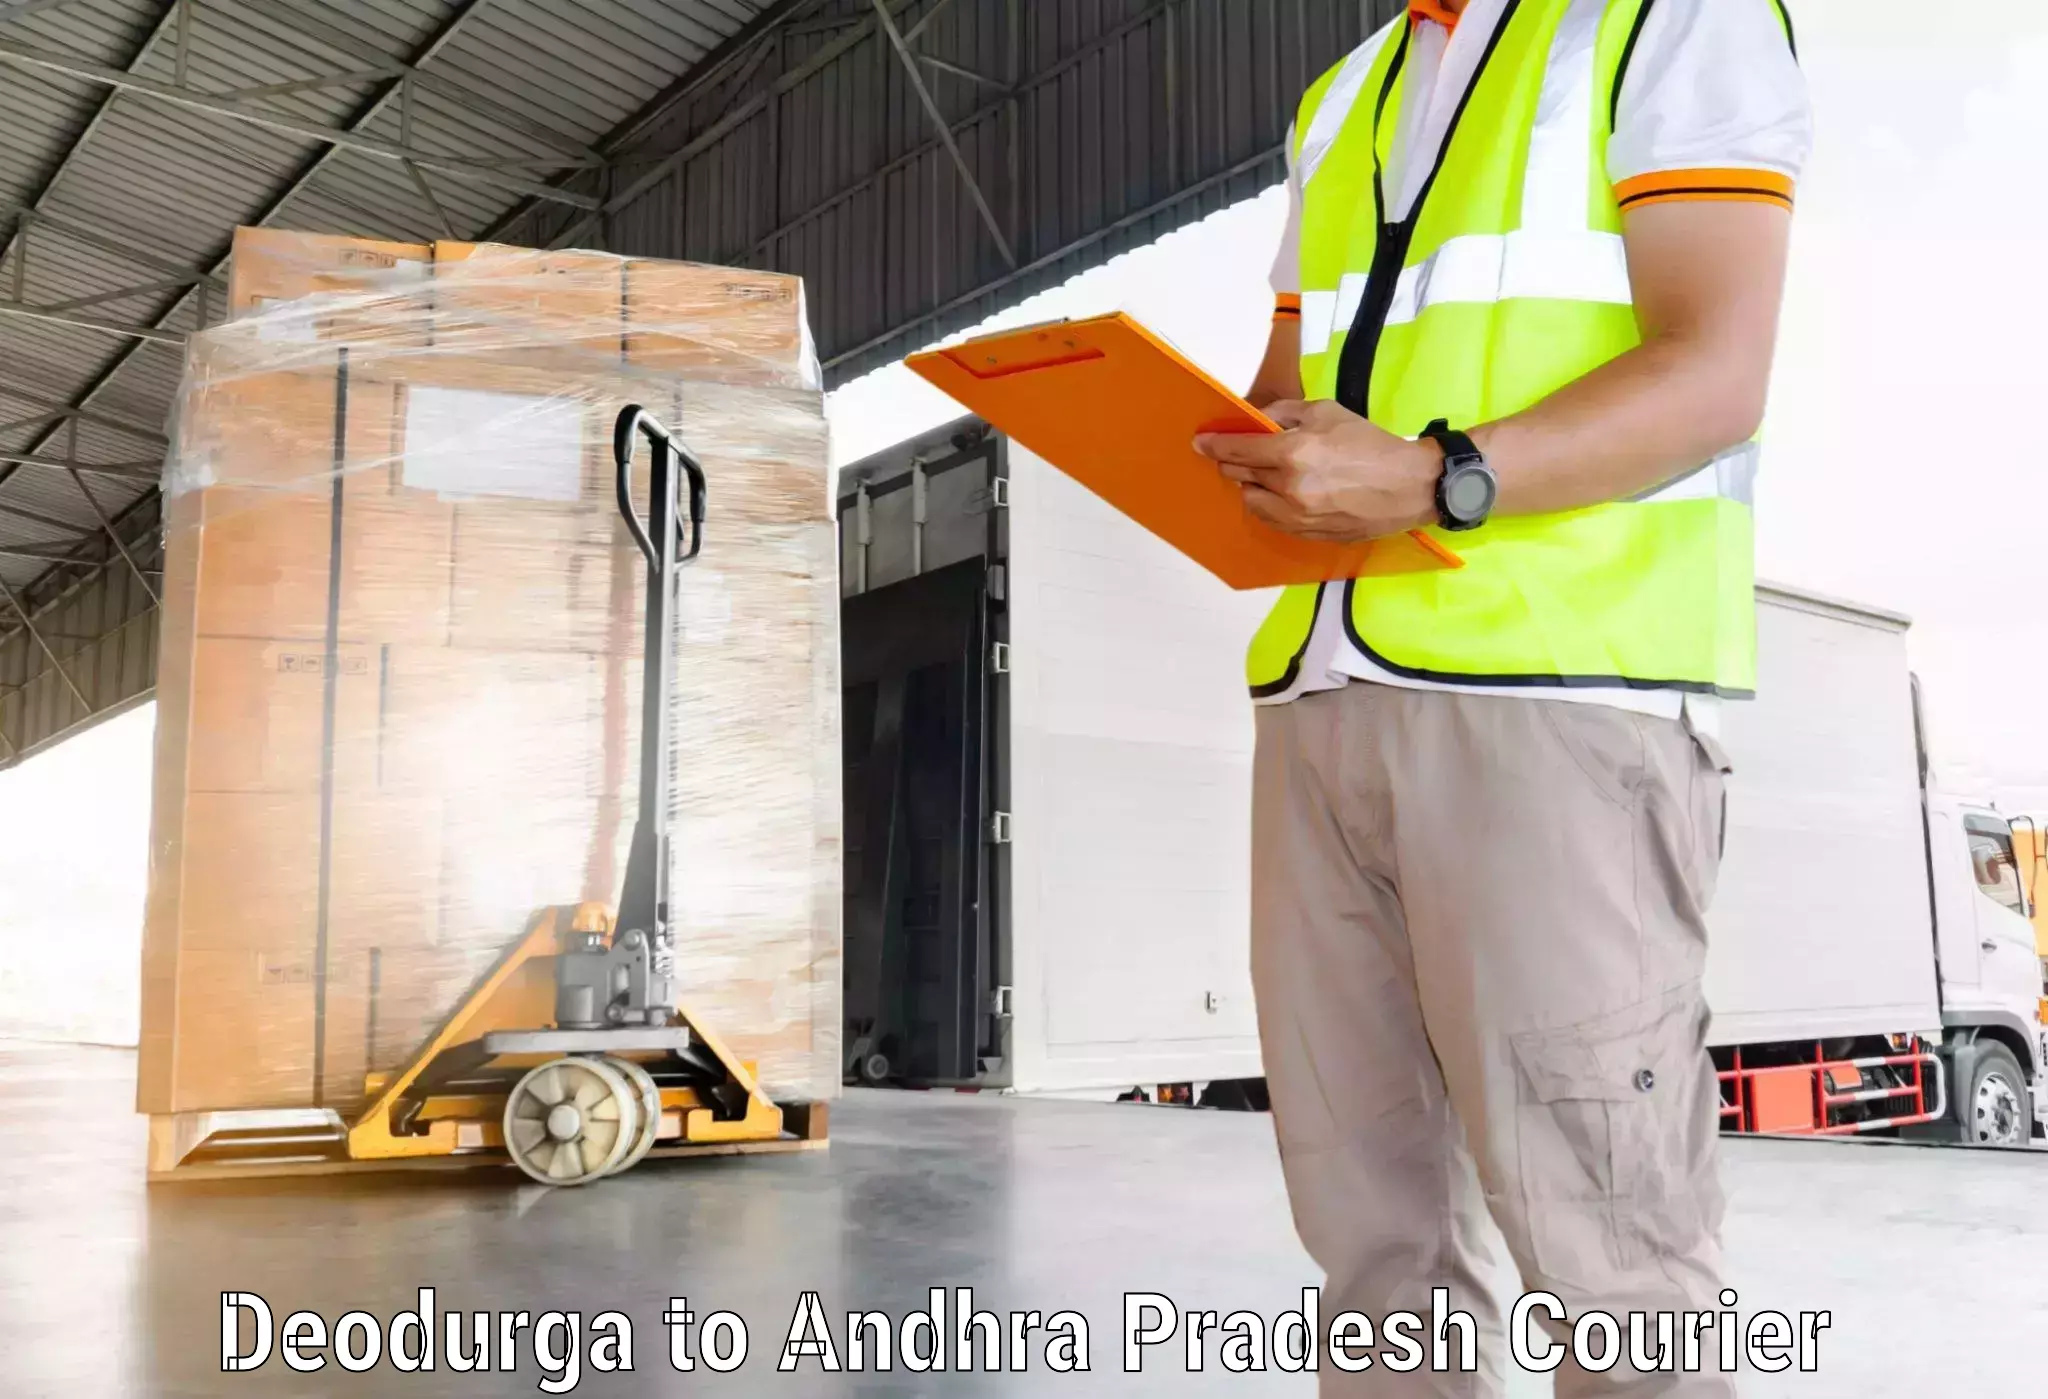 State-of-the-art courier technology Deodurga to Bondapalli